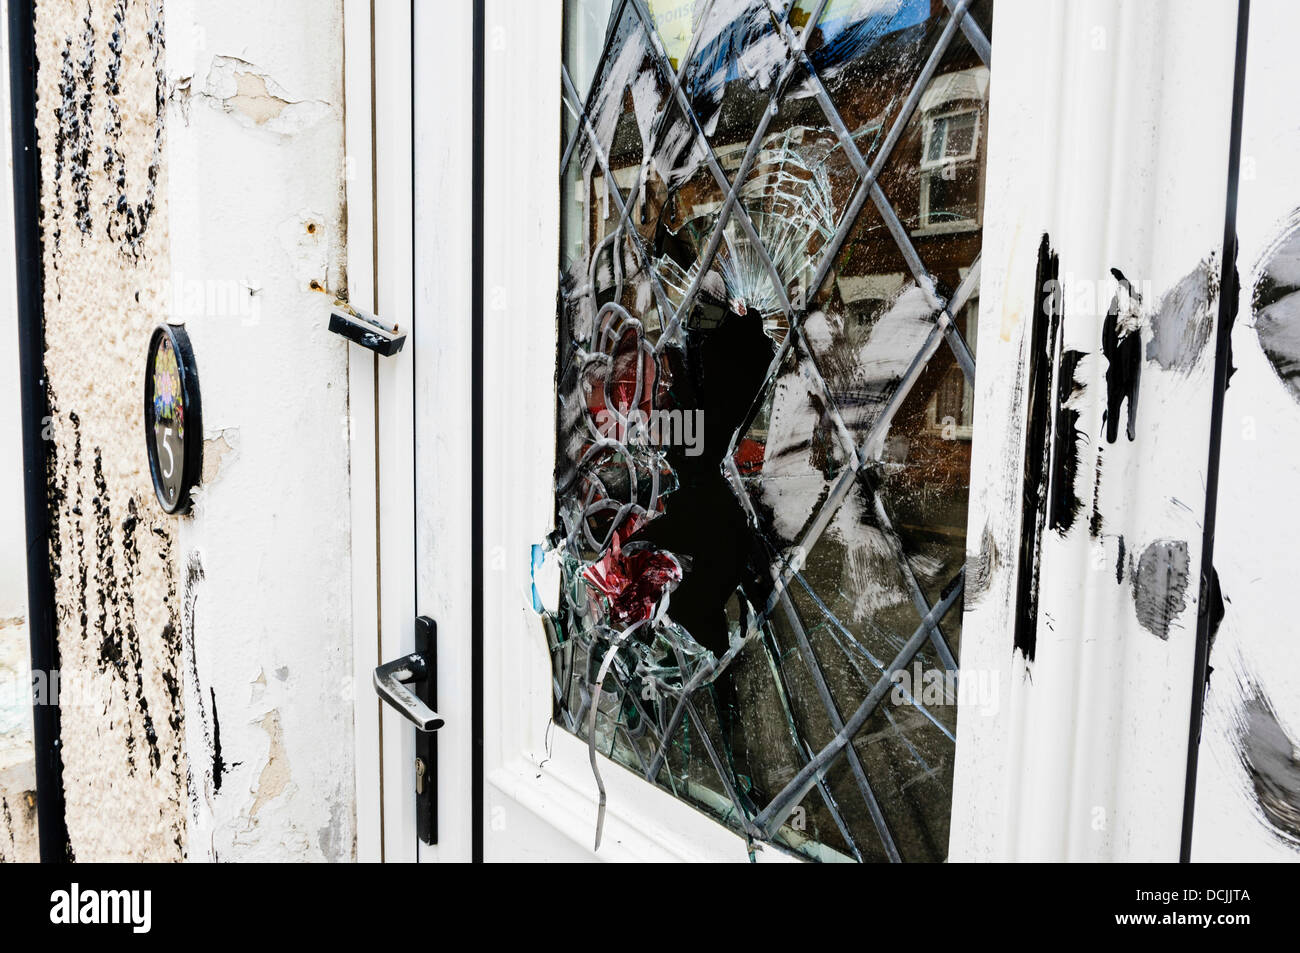 Belfast, Irlanda del Nord, Regno Unito. 19 Agosto 2013 - graffiti razzista è stata scritta sulle pareti e finestre fracassato, su una casa recentemente occupata da due uomini nigeriano a Belfast. Credito: Stephen Barnes/Alamy Live News Foto Stock